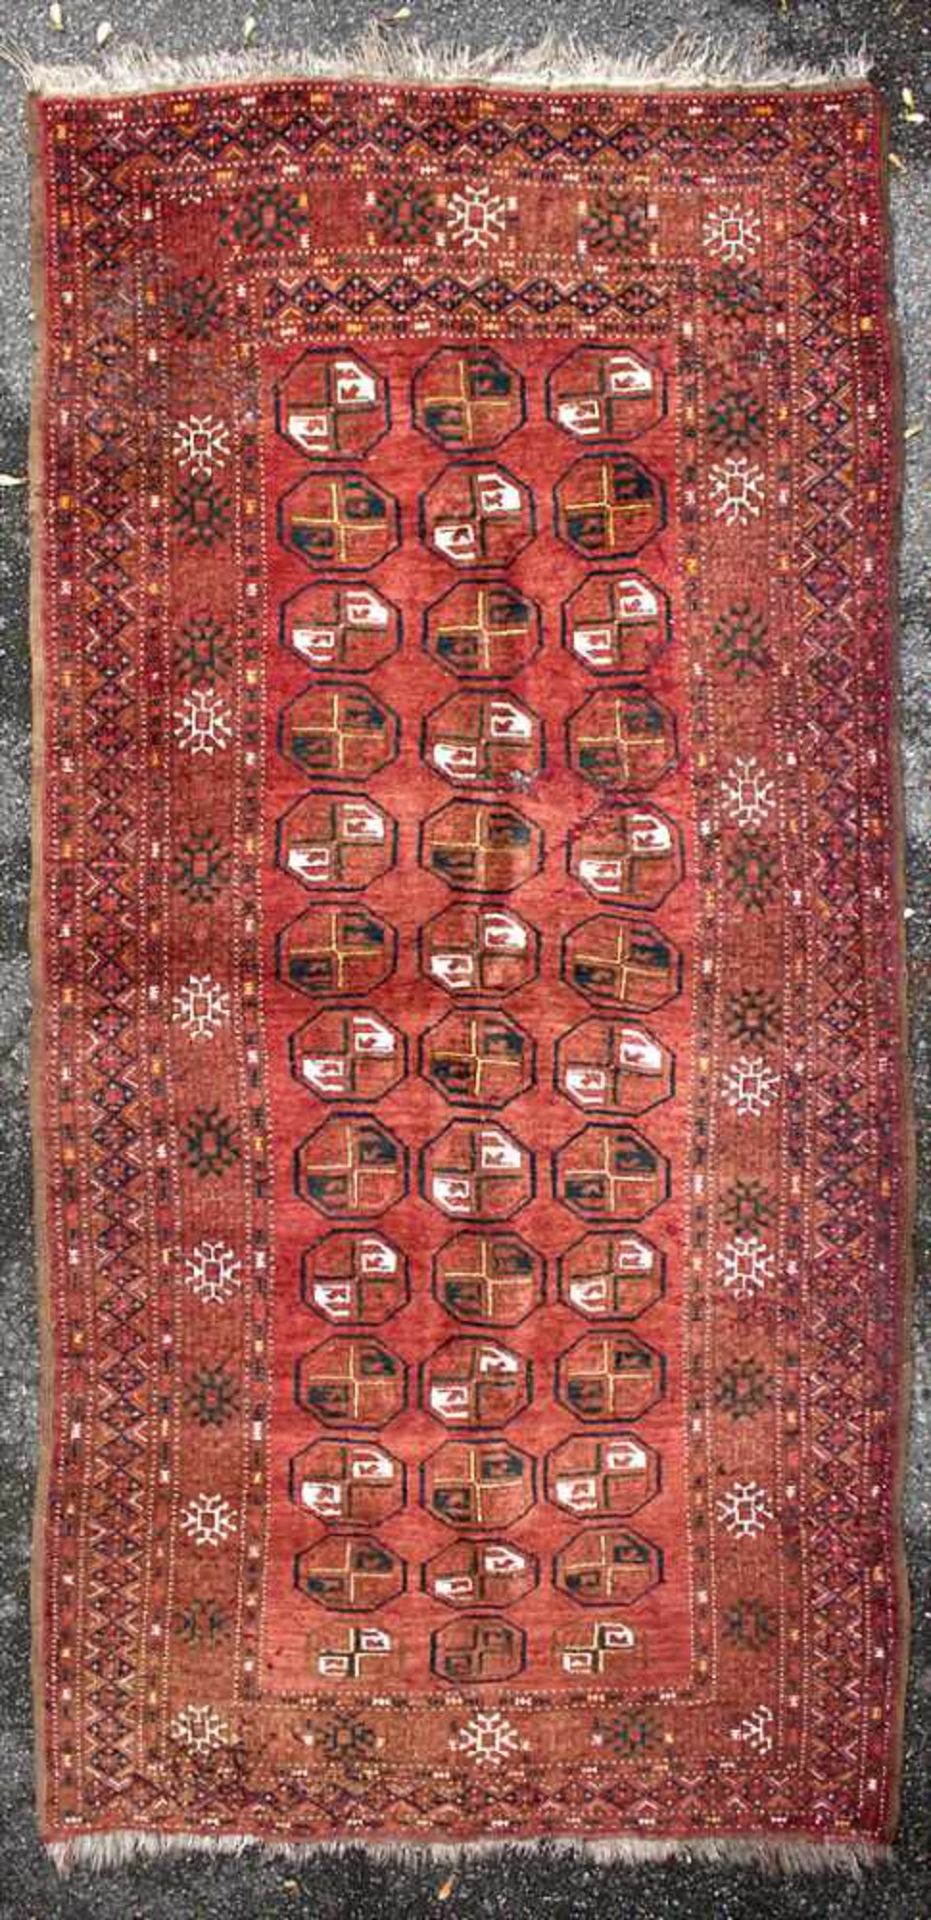 Orientteppich / An oriental carpetMaterial: Wolle auf Baumwolle, Naturfarben, Maße: 233 x 110 cm,